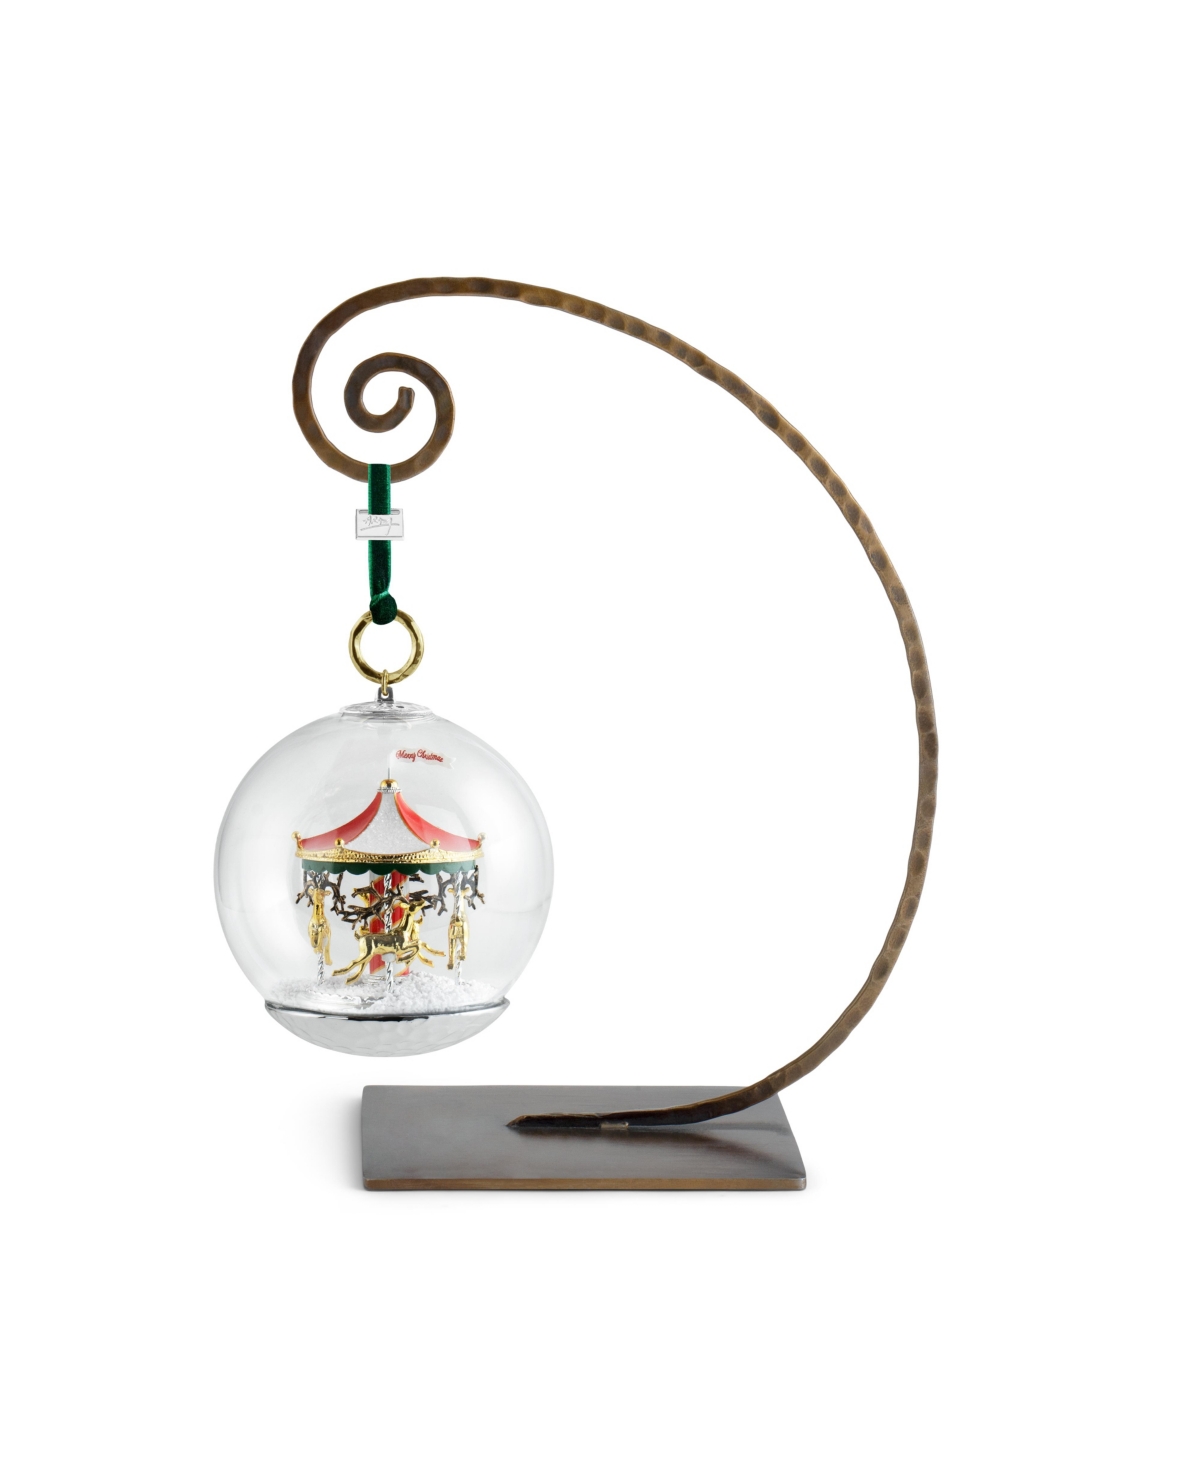 Michael Aram Merry Go Round Snow Globe Ornament In No Color